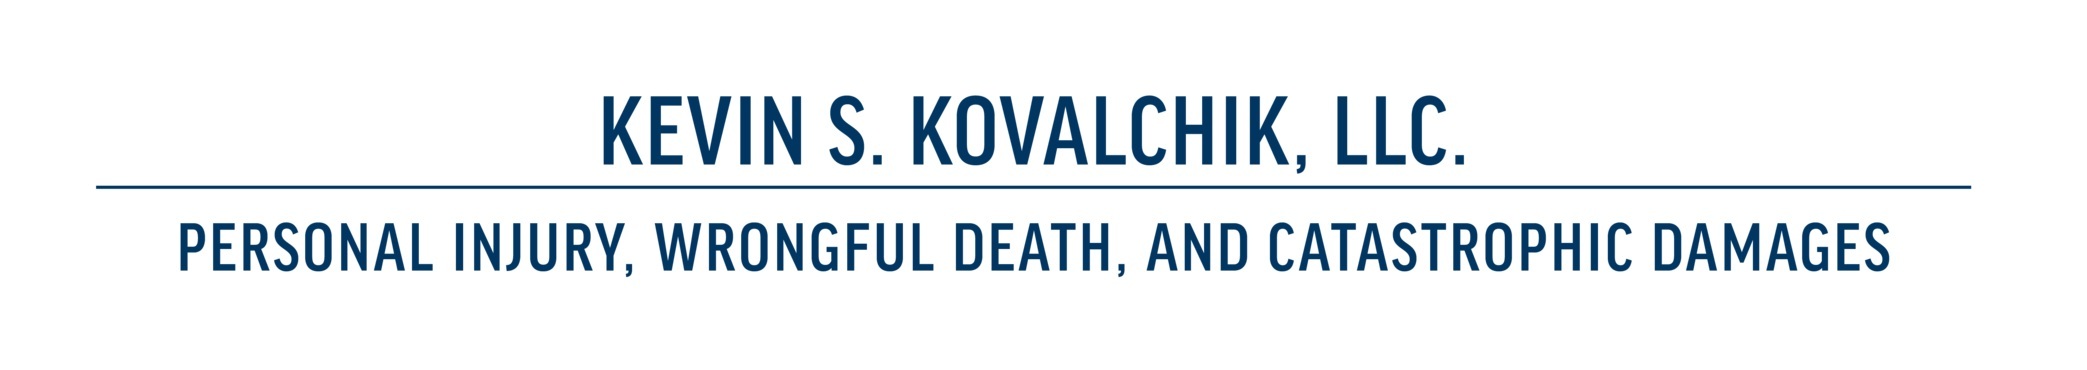 Kevin S. Kovalchik, LLC